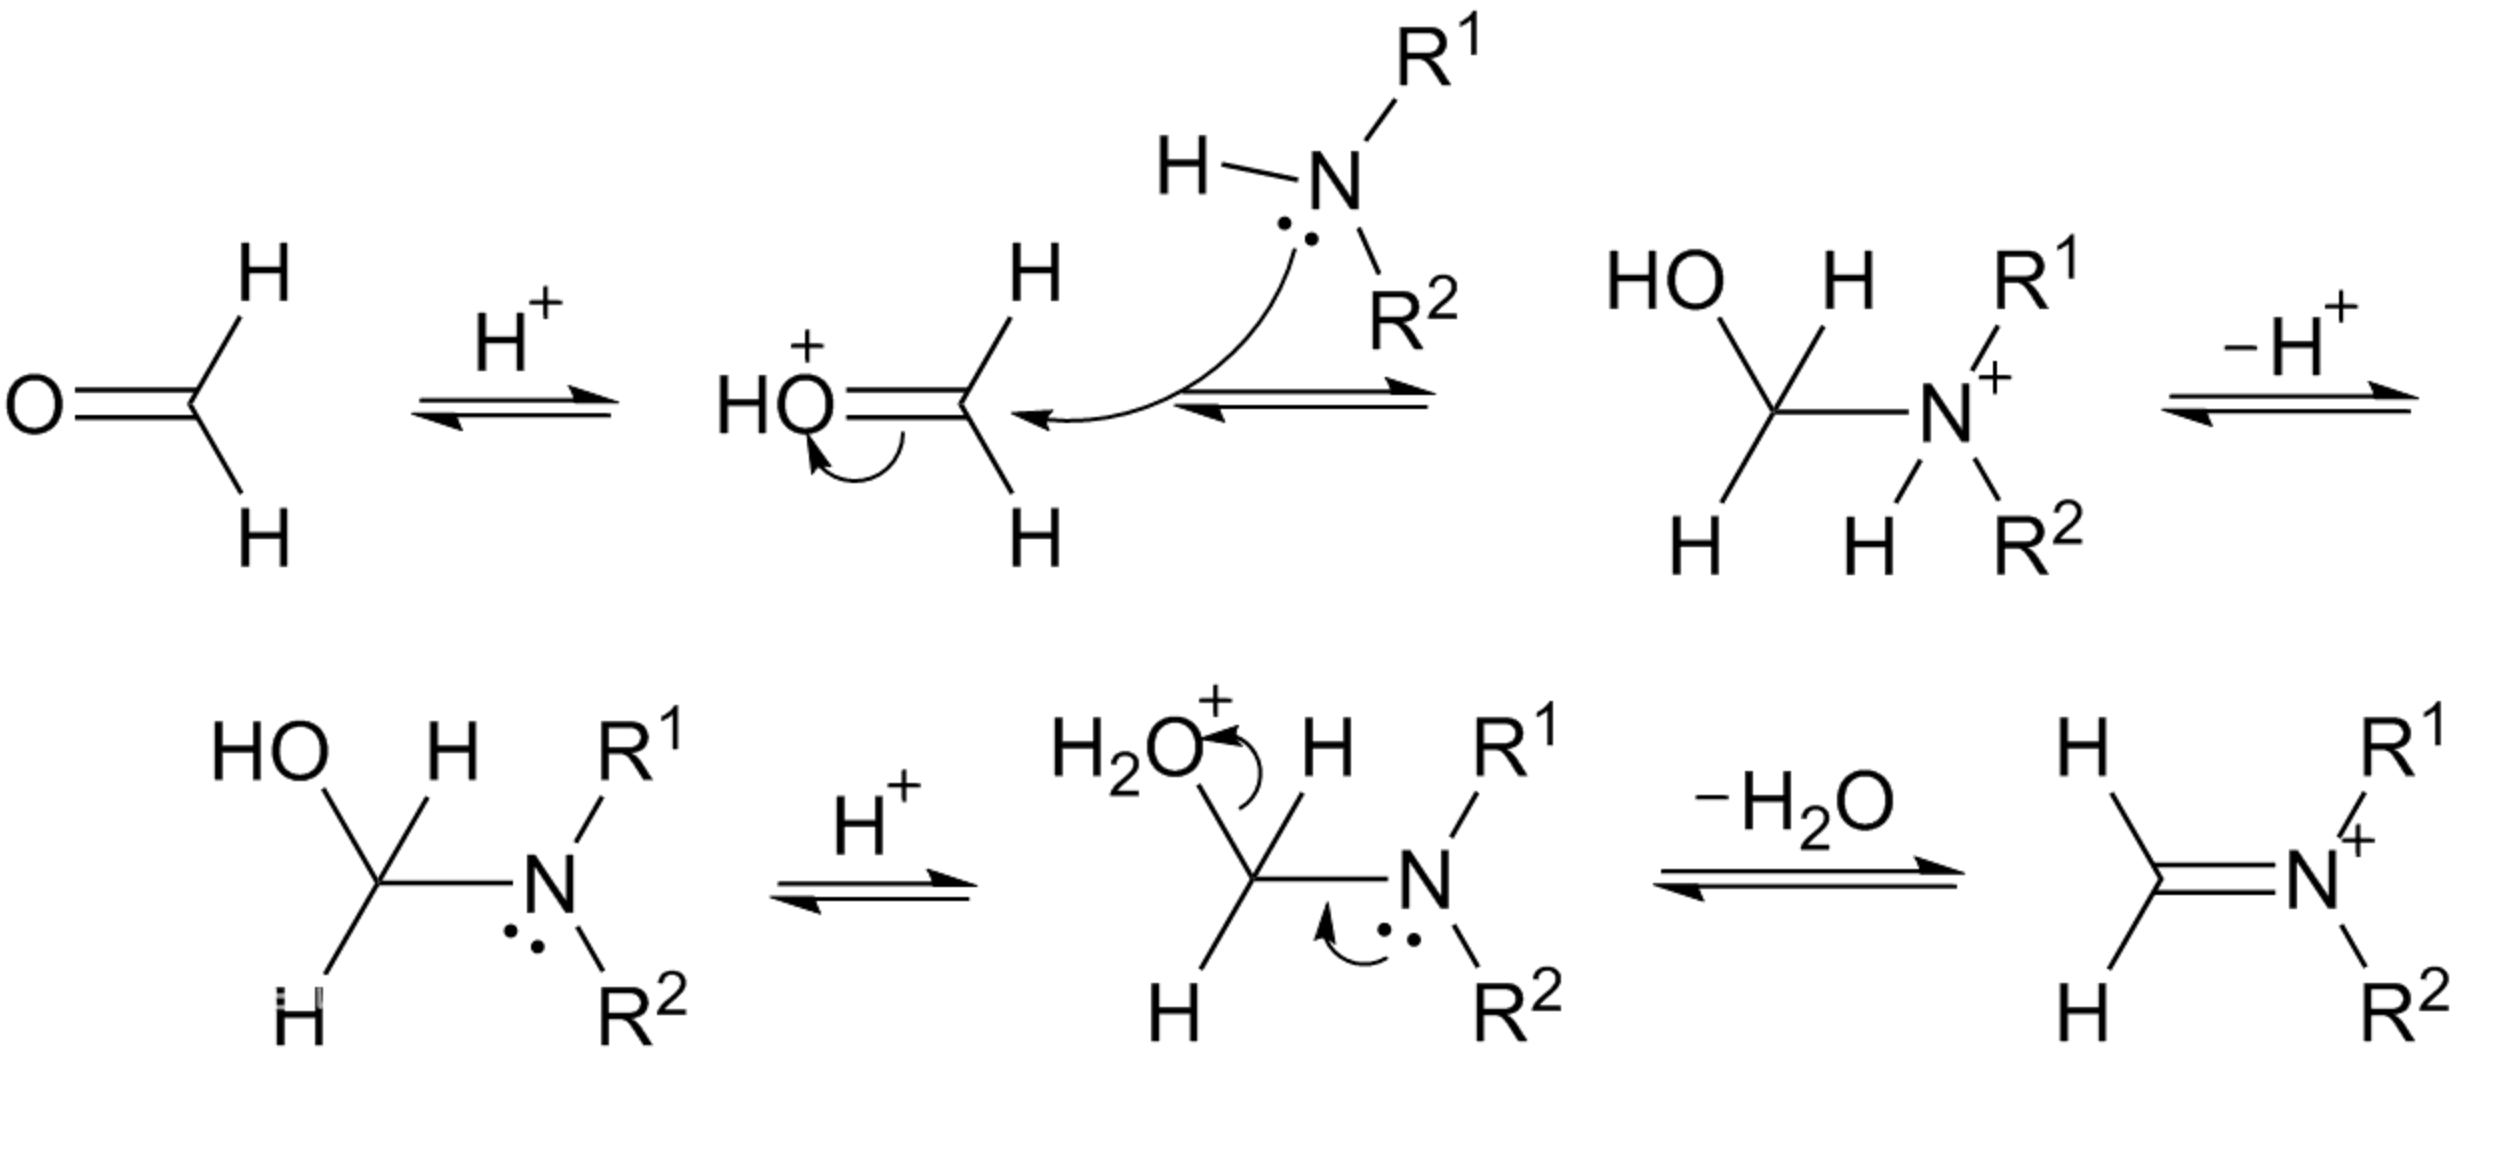 曼尼希反應形成醛亞胺的機理